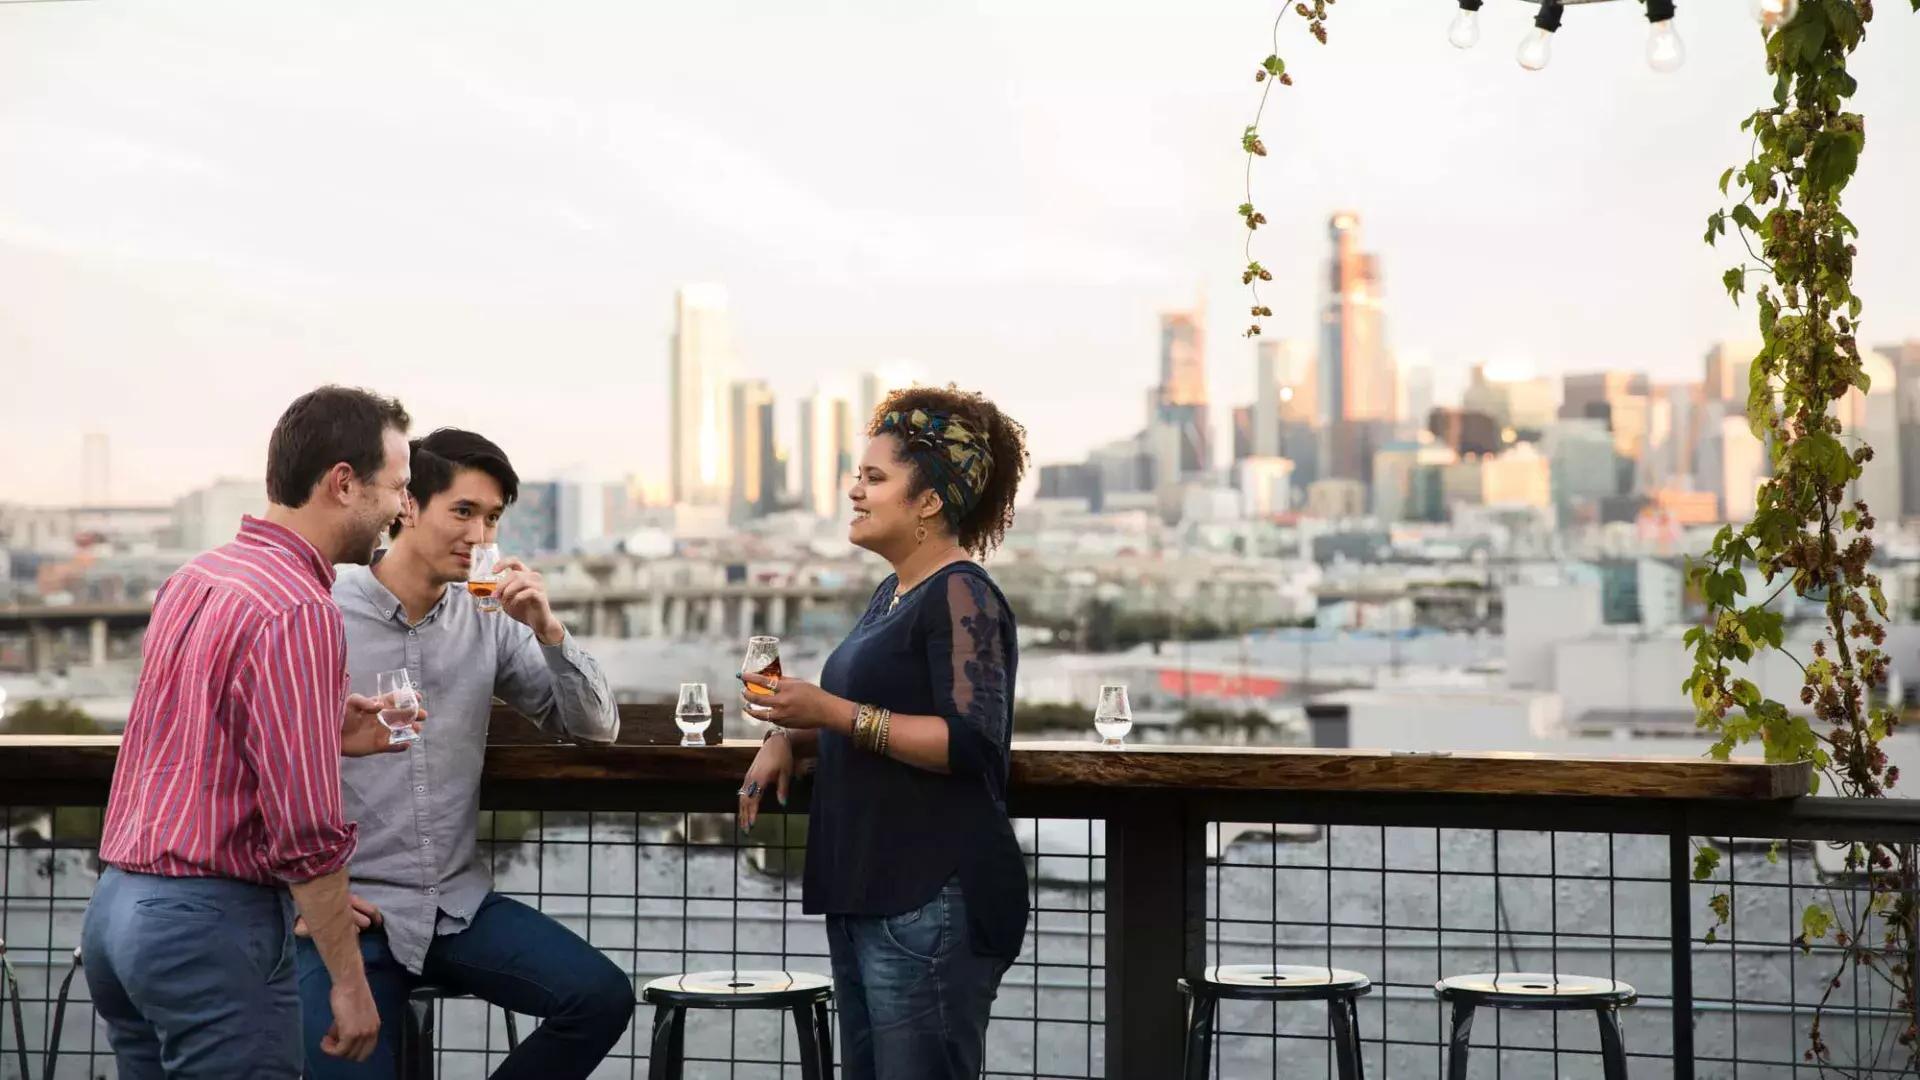 캘리포니아주 샌프란시스코에 있는 Anchor Distilling의 옥상 데크에 있는 야외 테이블 주위에 세 사람이 모여 있습니다.